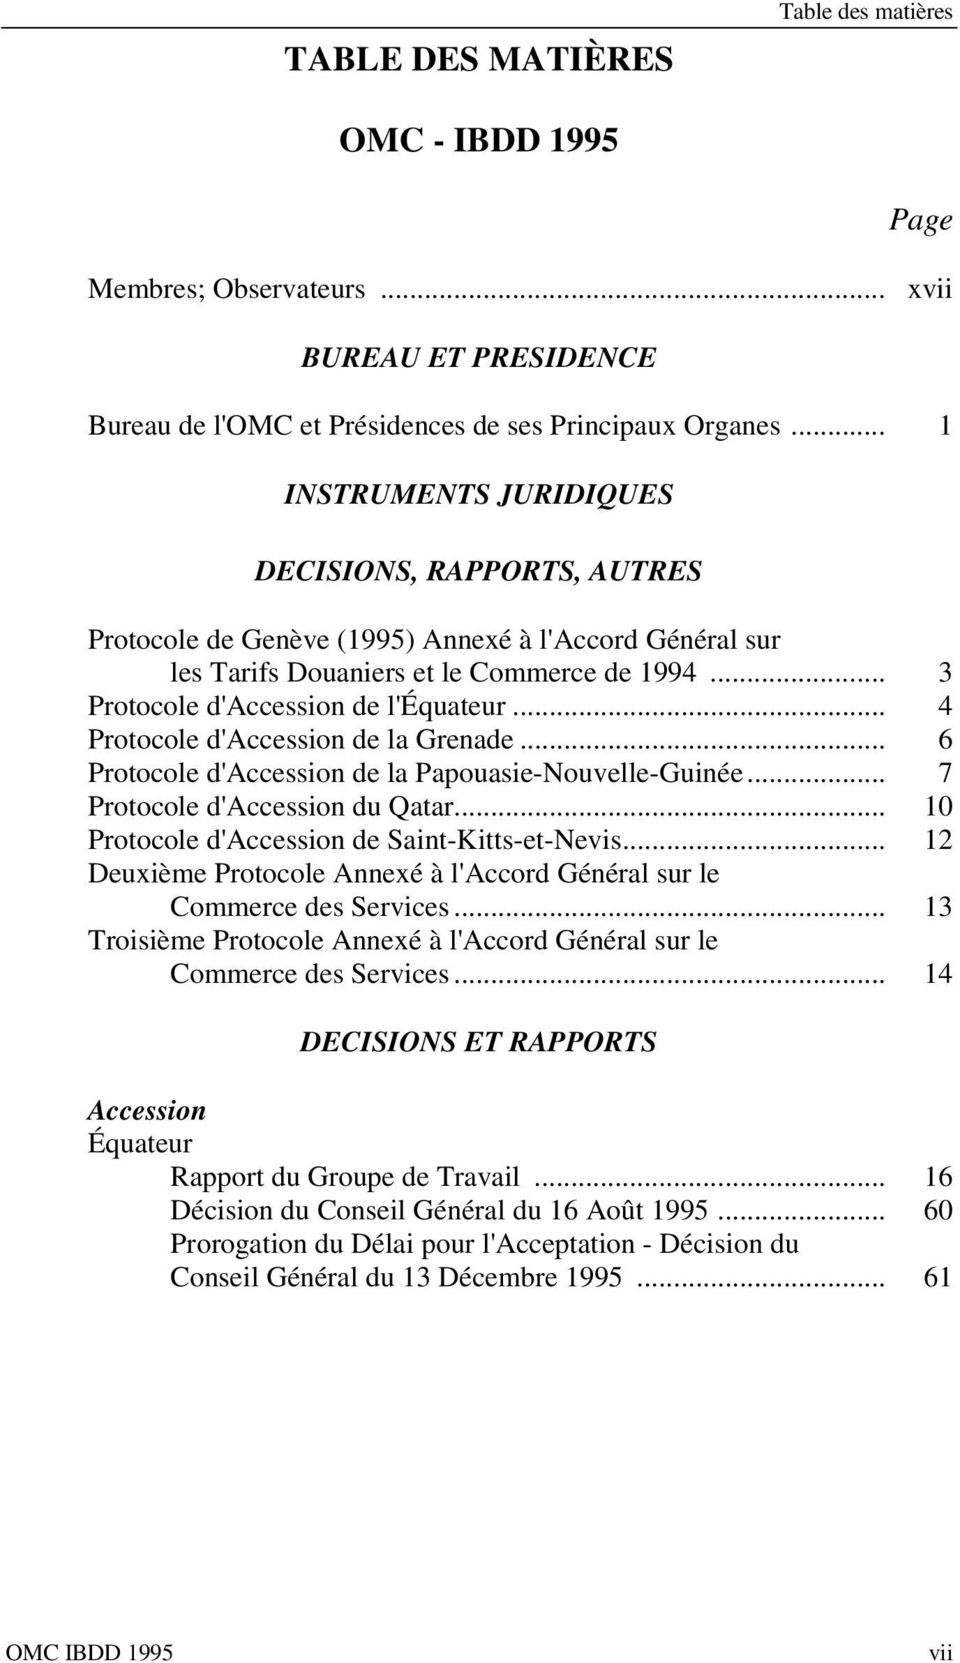 .. 4 Protocole d'accession de la Grenade... 6 Protocole d'accession de la Papouasie-Nouvelle-Guinée... 7 Protocole d'accession du Qatar... 10 Protocole d'accession de Saint-Kitts-et-Nevis.